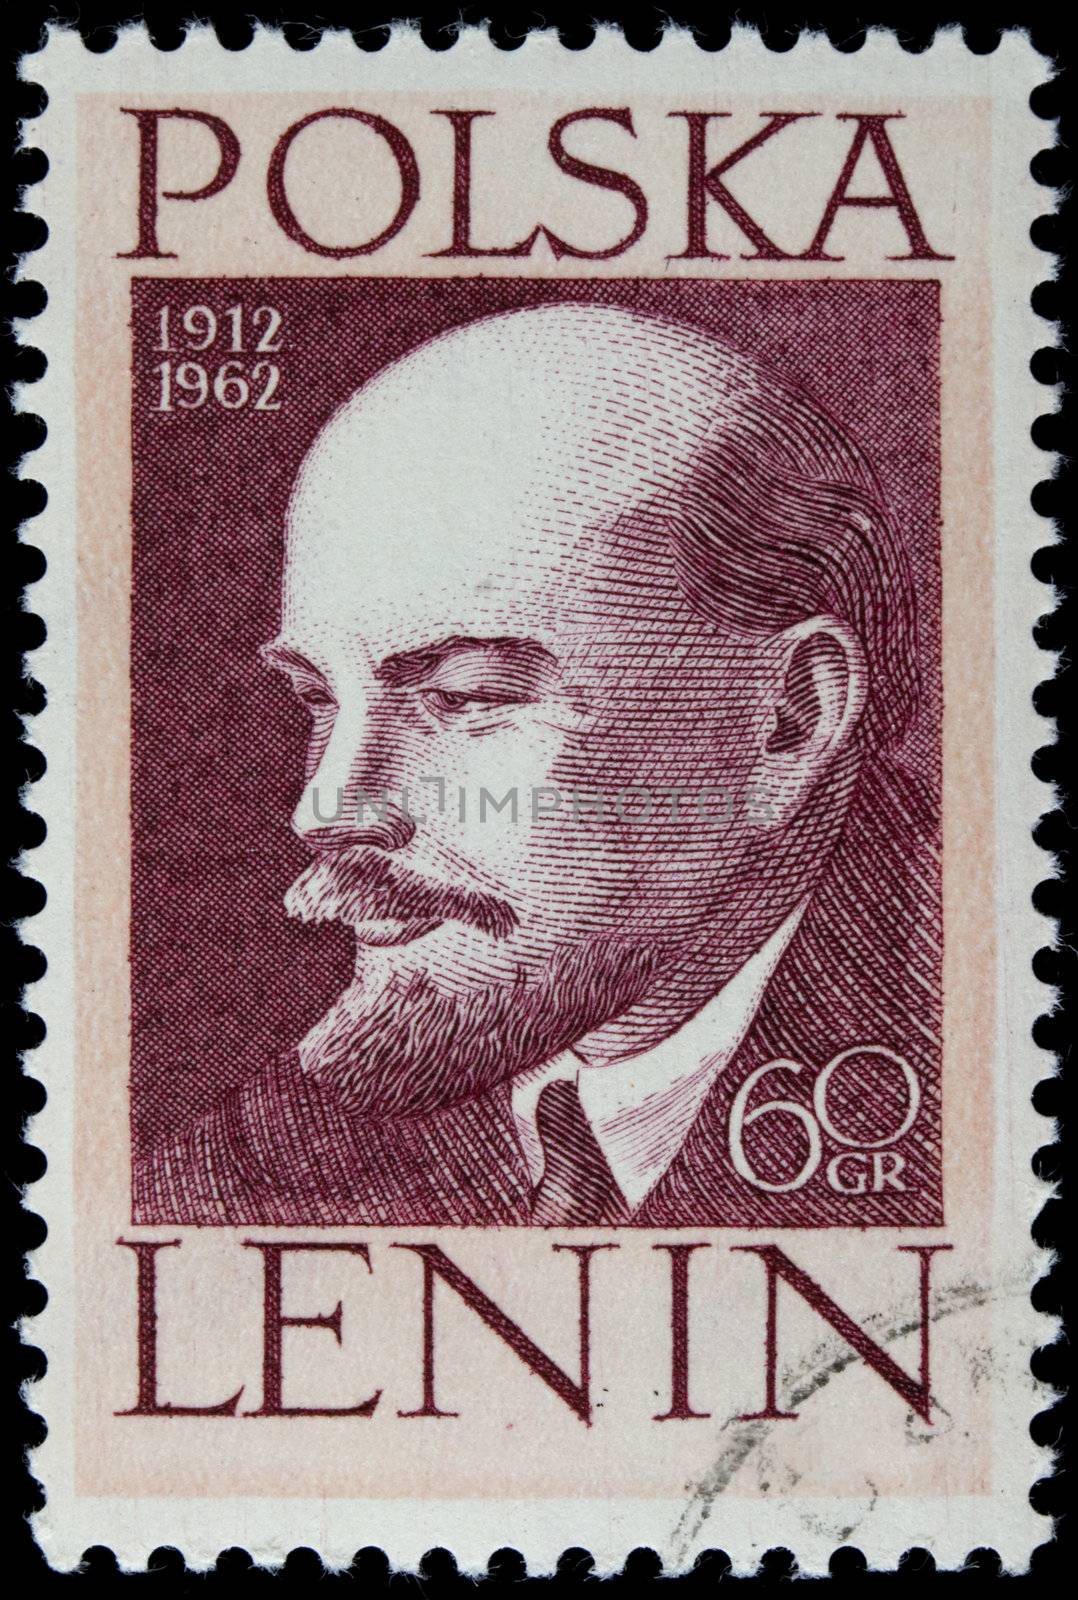 POLAND 1962 - portrait of Vladimir Lenin on a vintage canceled post stamp